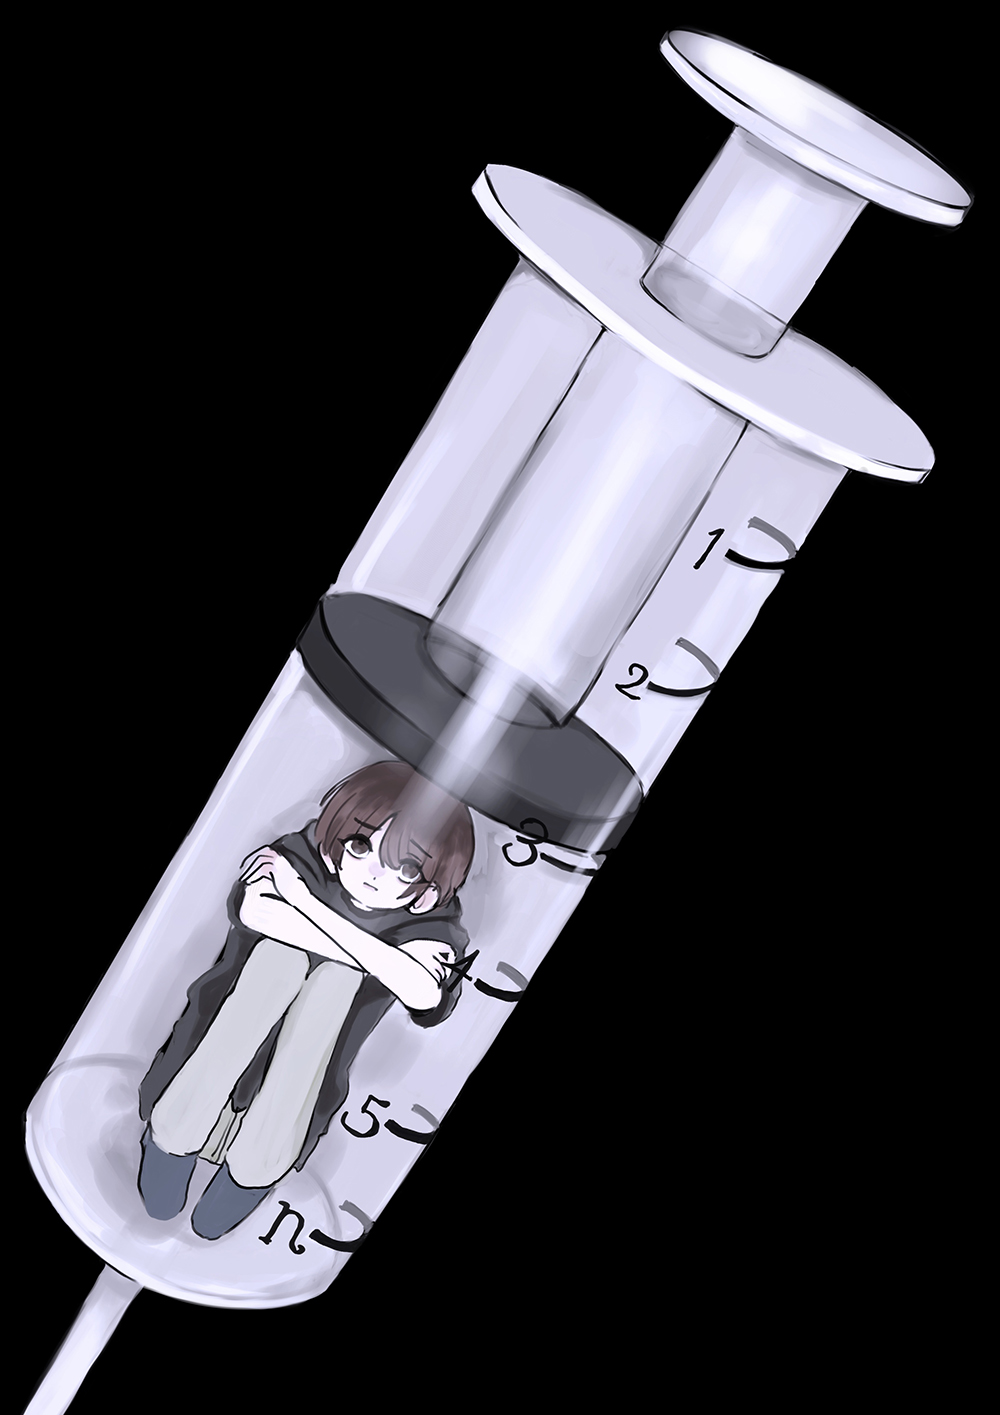 ワクチンプレッシャー / Vaccine Pressure